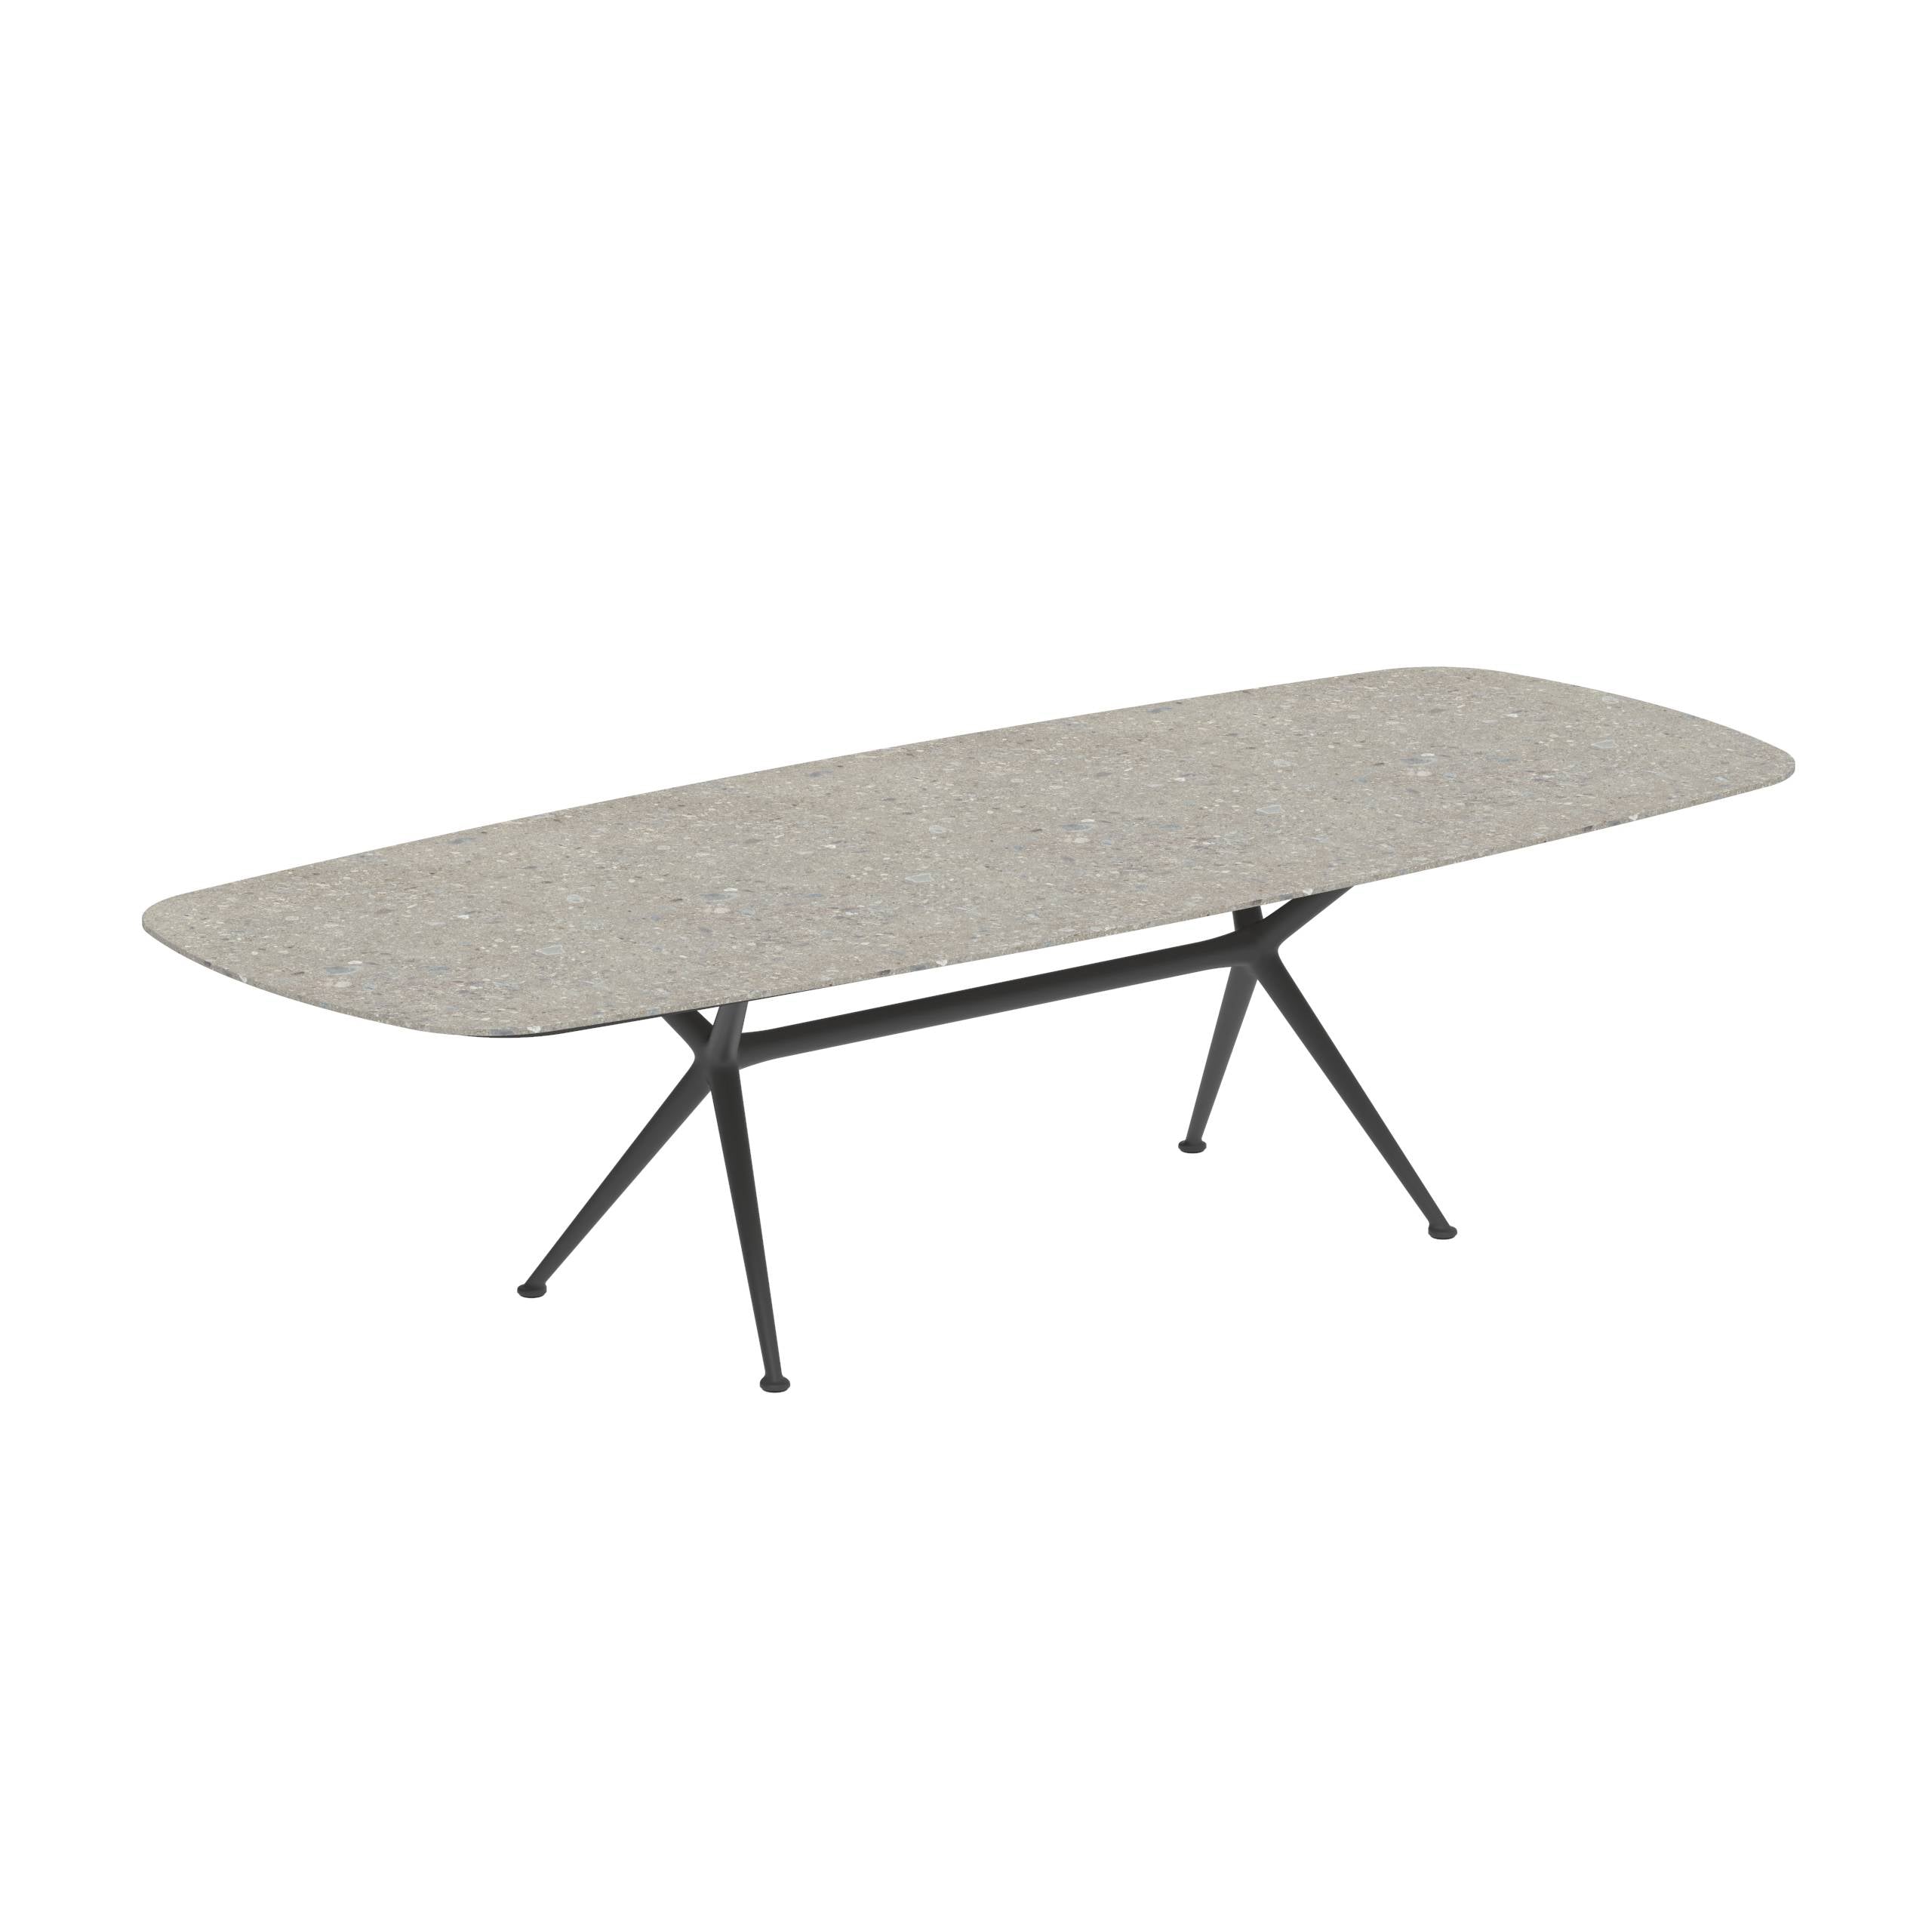 Exes Table 300x120cm Alu Legs Anthracite - Table Top Ceramic Ceppo Dolomitica